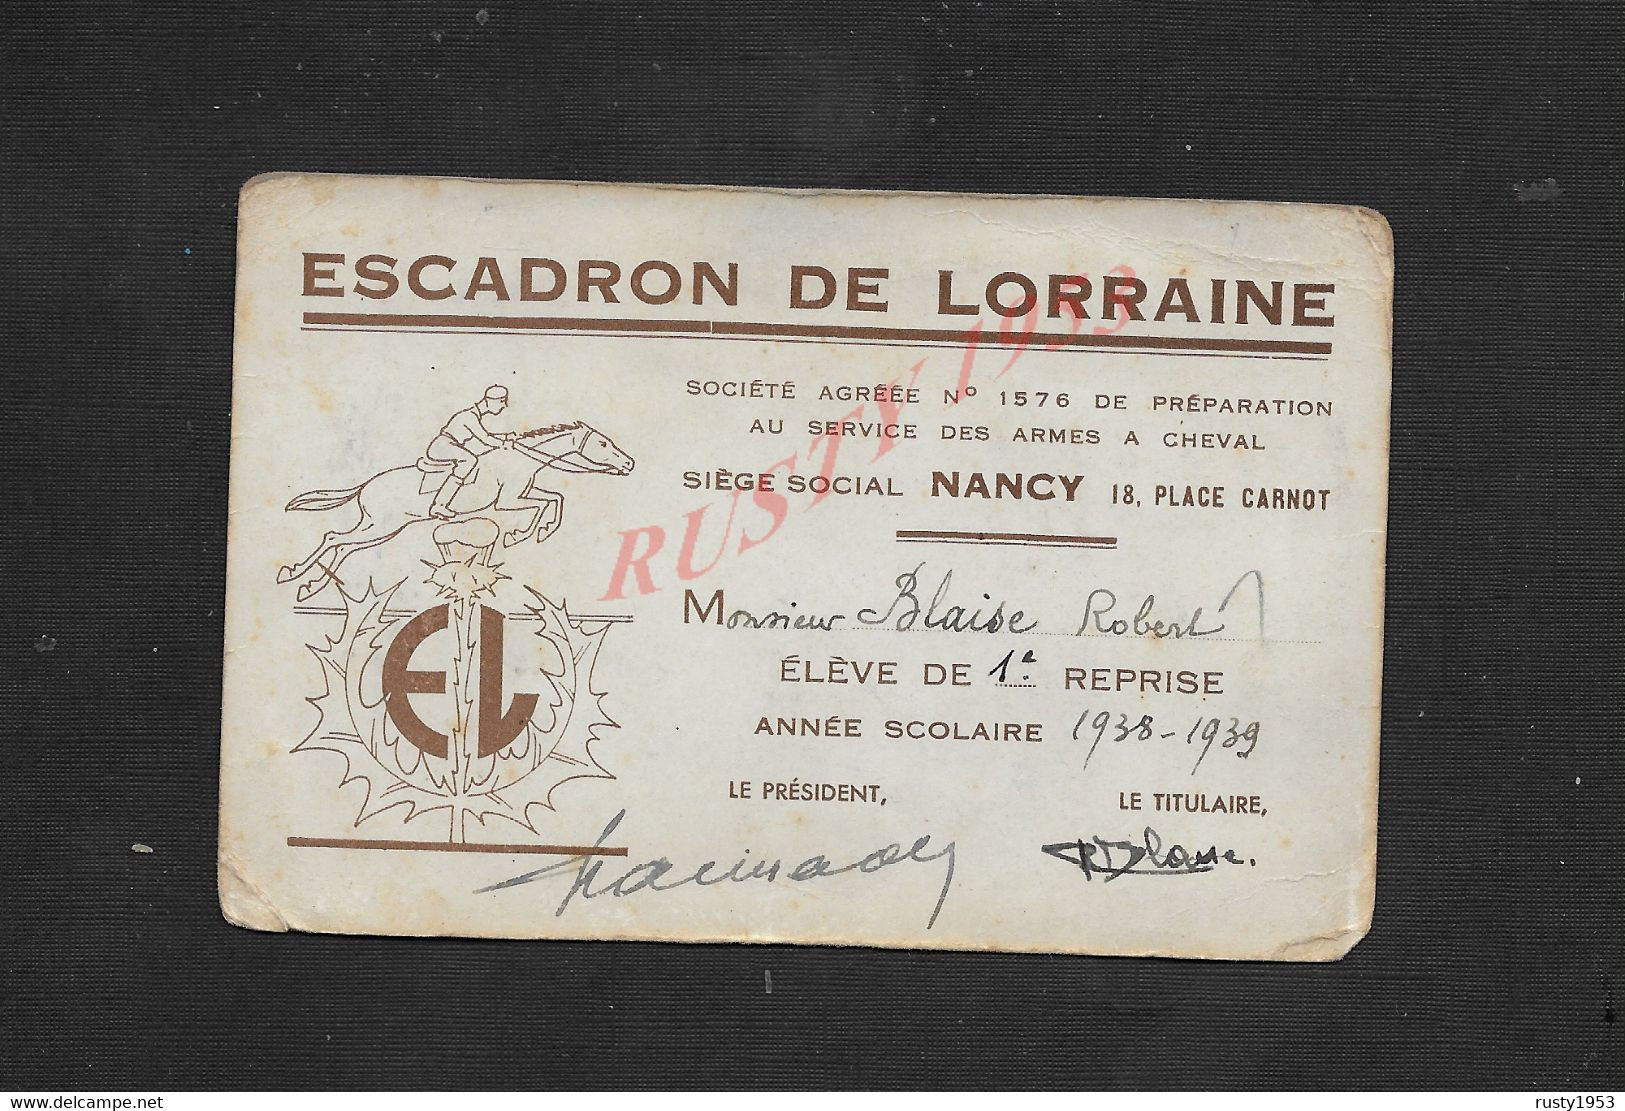 ÉQUITATION CARTE ILLUSTRÉE ESCADRON DE LORRAINE AU SERVICE DES ARMES À CHEVAL À NANCY DE BLAISE ROBERT 1938 / 39 : - Equitation